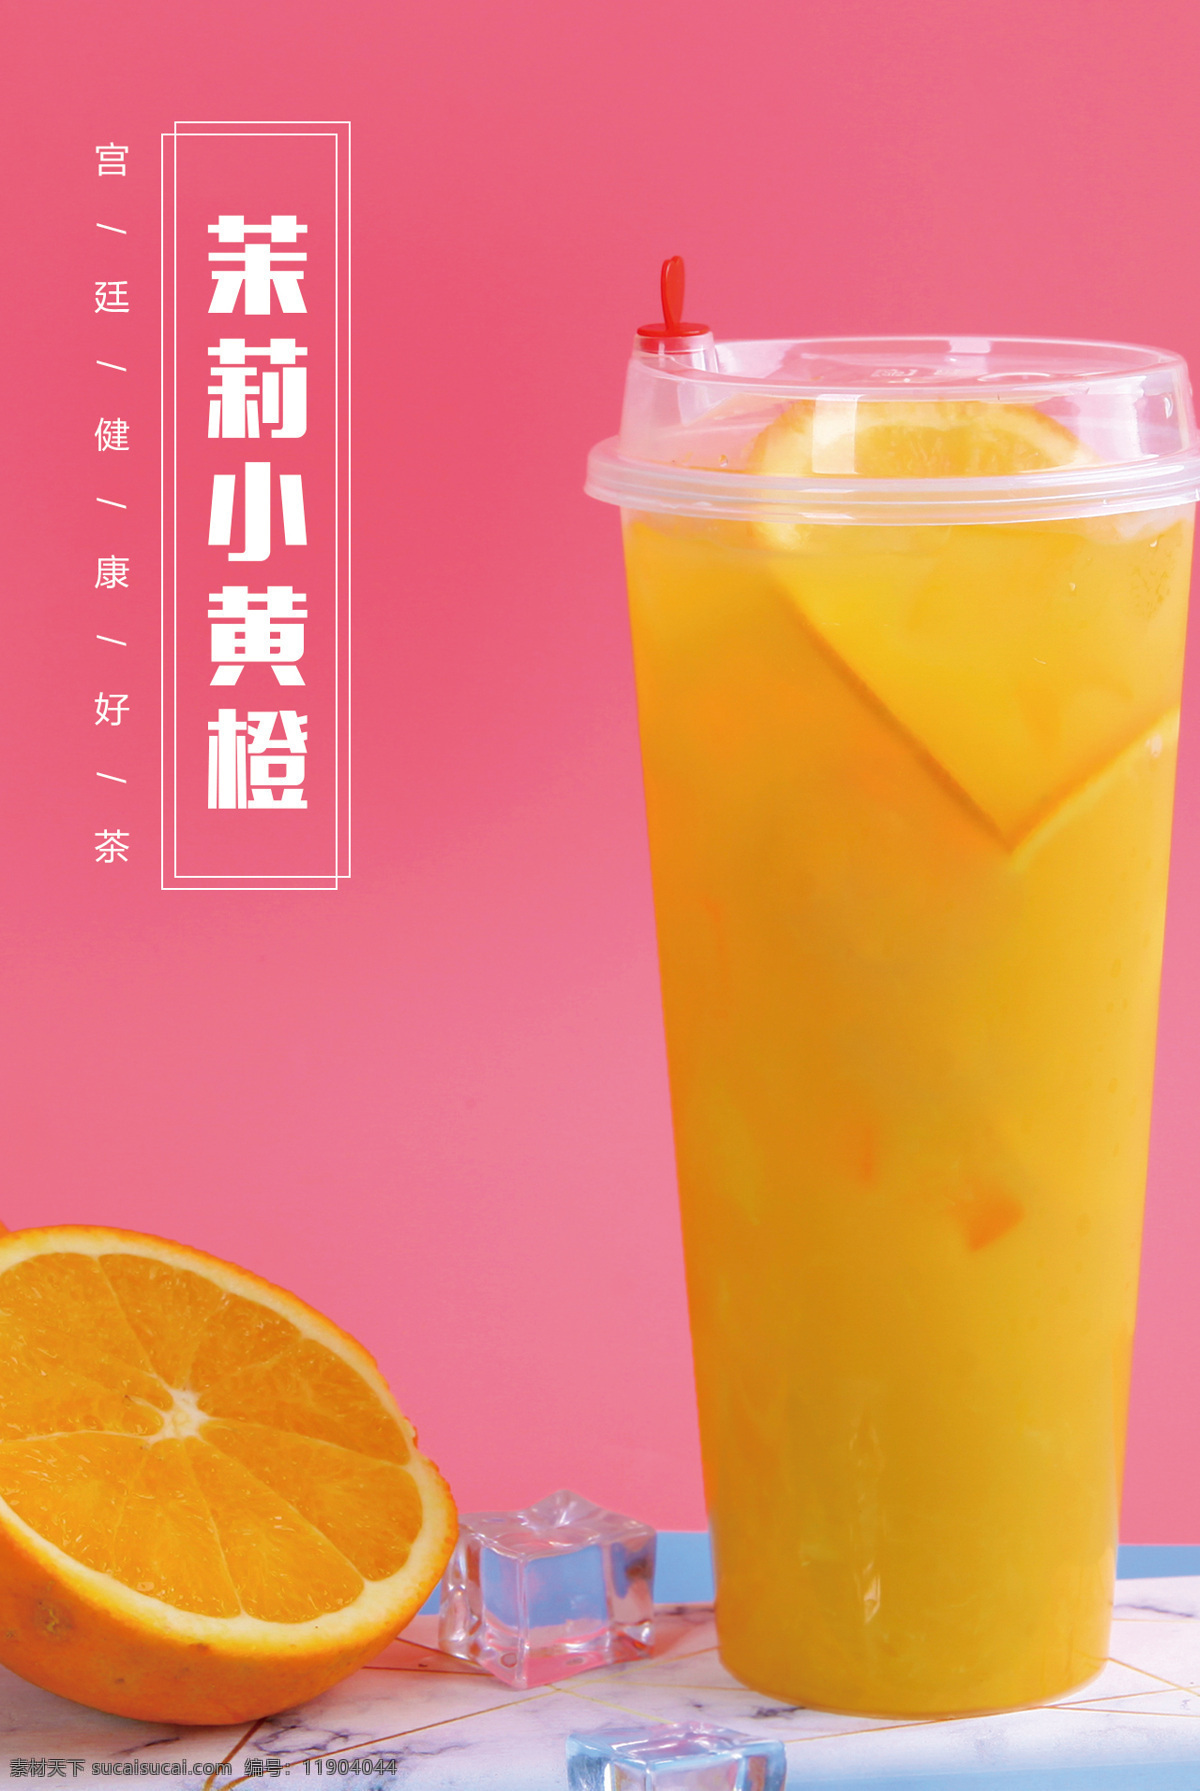 橙子饮料海报 橙子饮料背景 橙子饮品 甜品饮料 饮料背景图